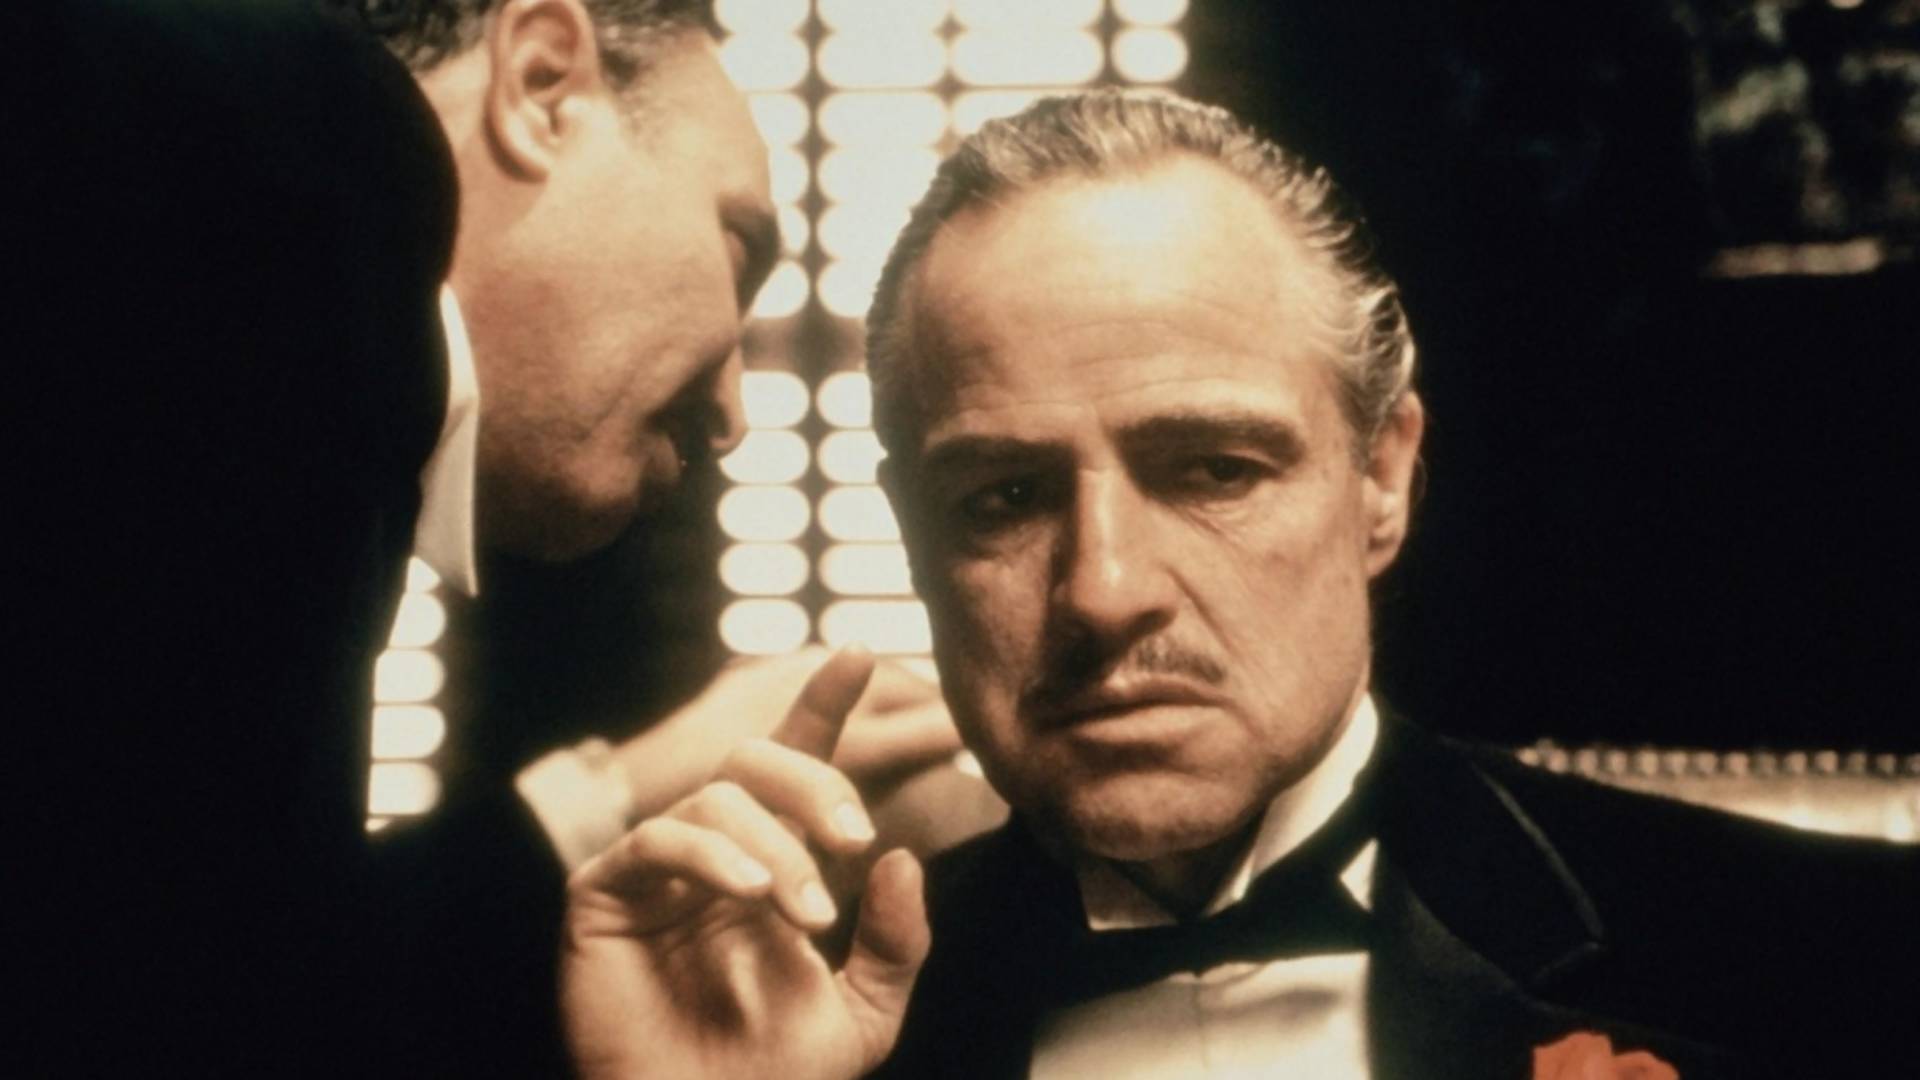 Istorijski trenutak kad je Marlon Brando odbio Oskara za ulogu u "Kumu"